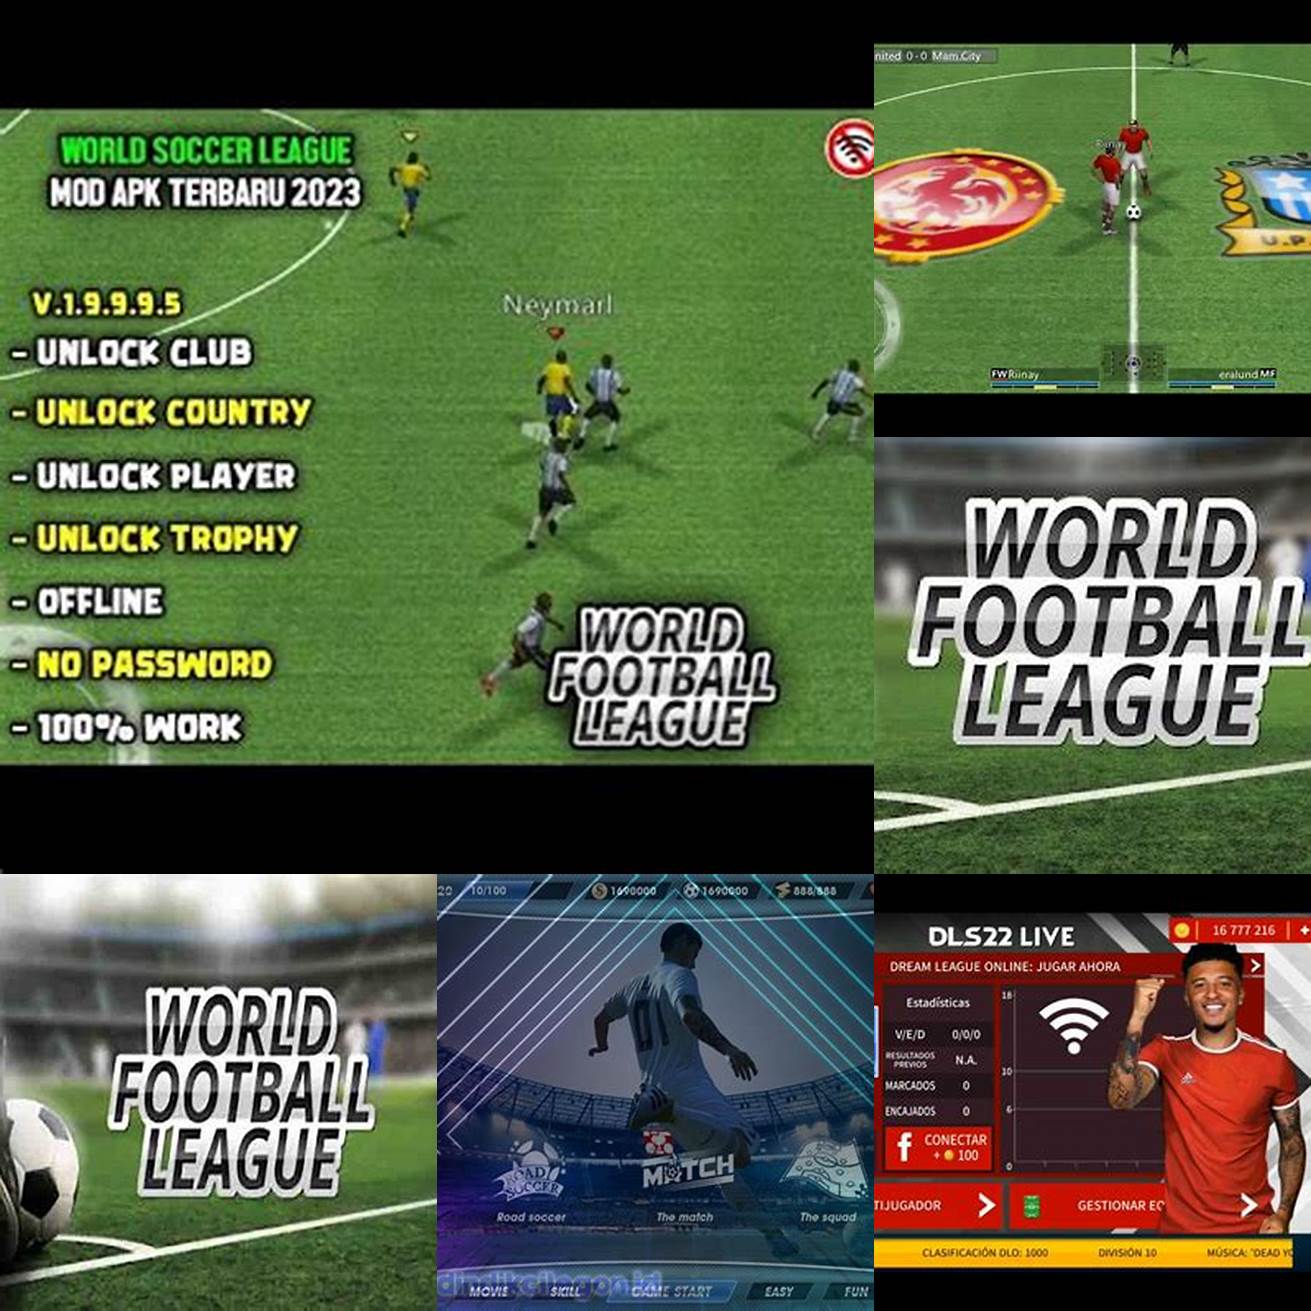 2 Turnamen World Football League Mod Apk menawarkan banyak turnamen yang dapat Anda ikuti